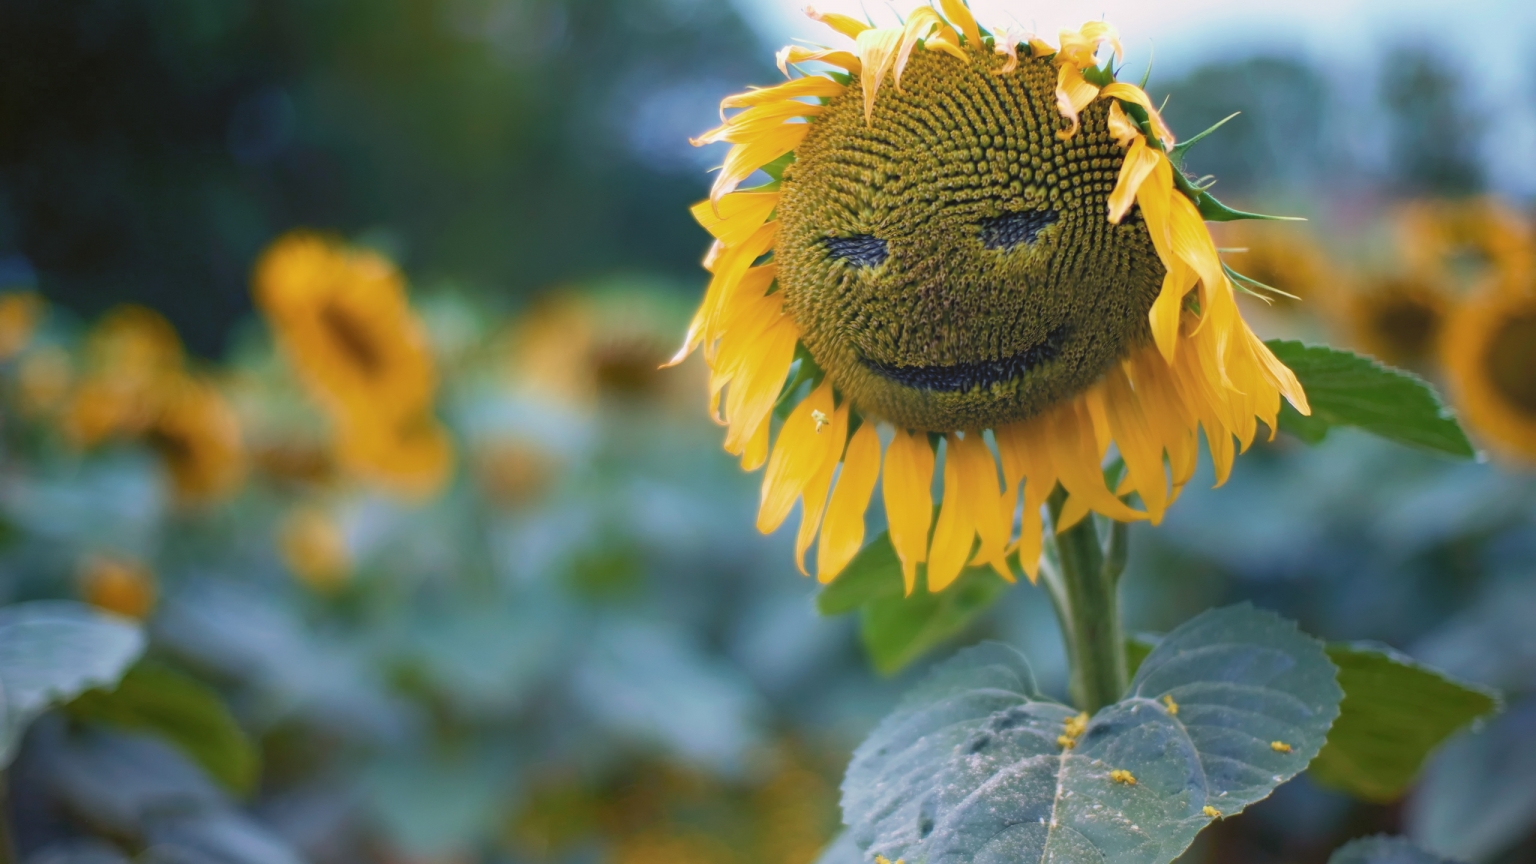 Sun Flower Face for 1536 x 864 HDTV resolution